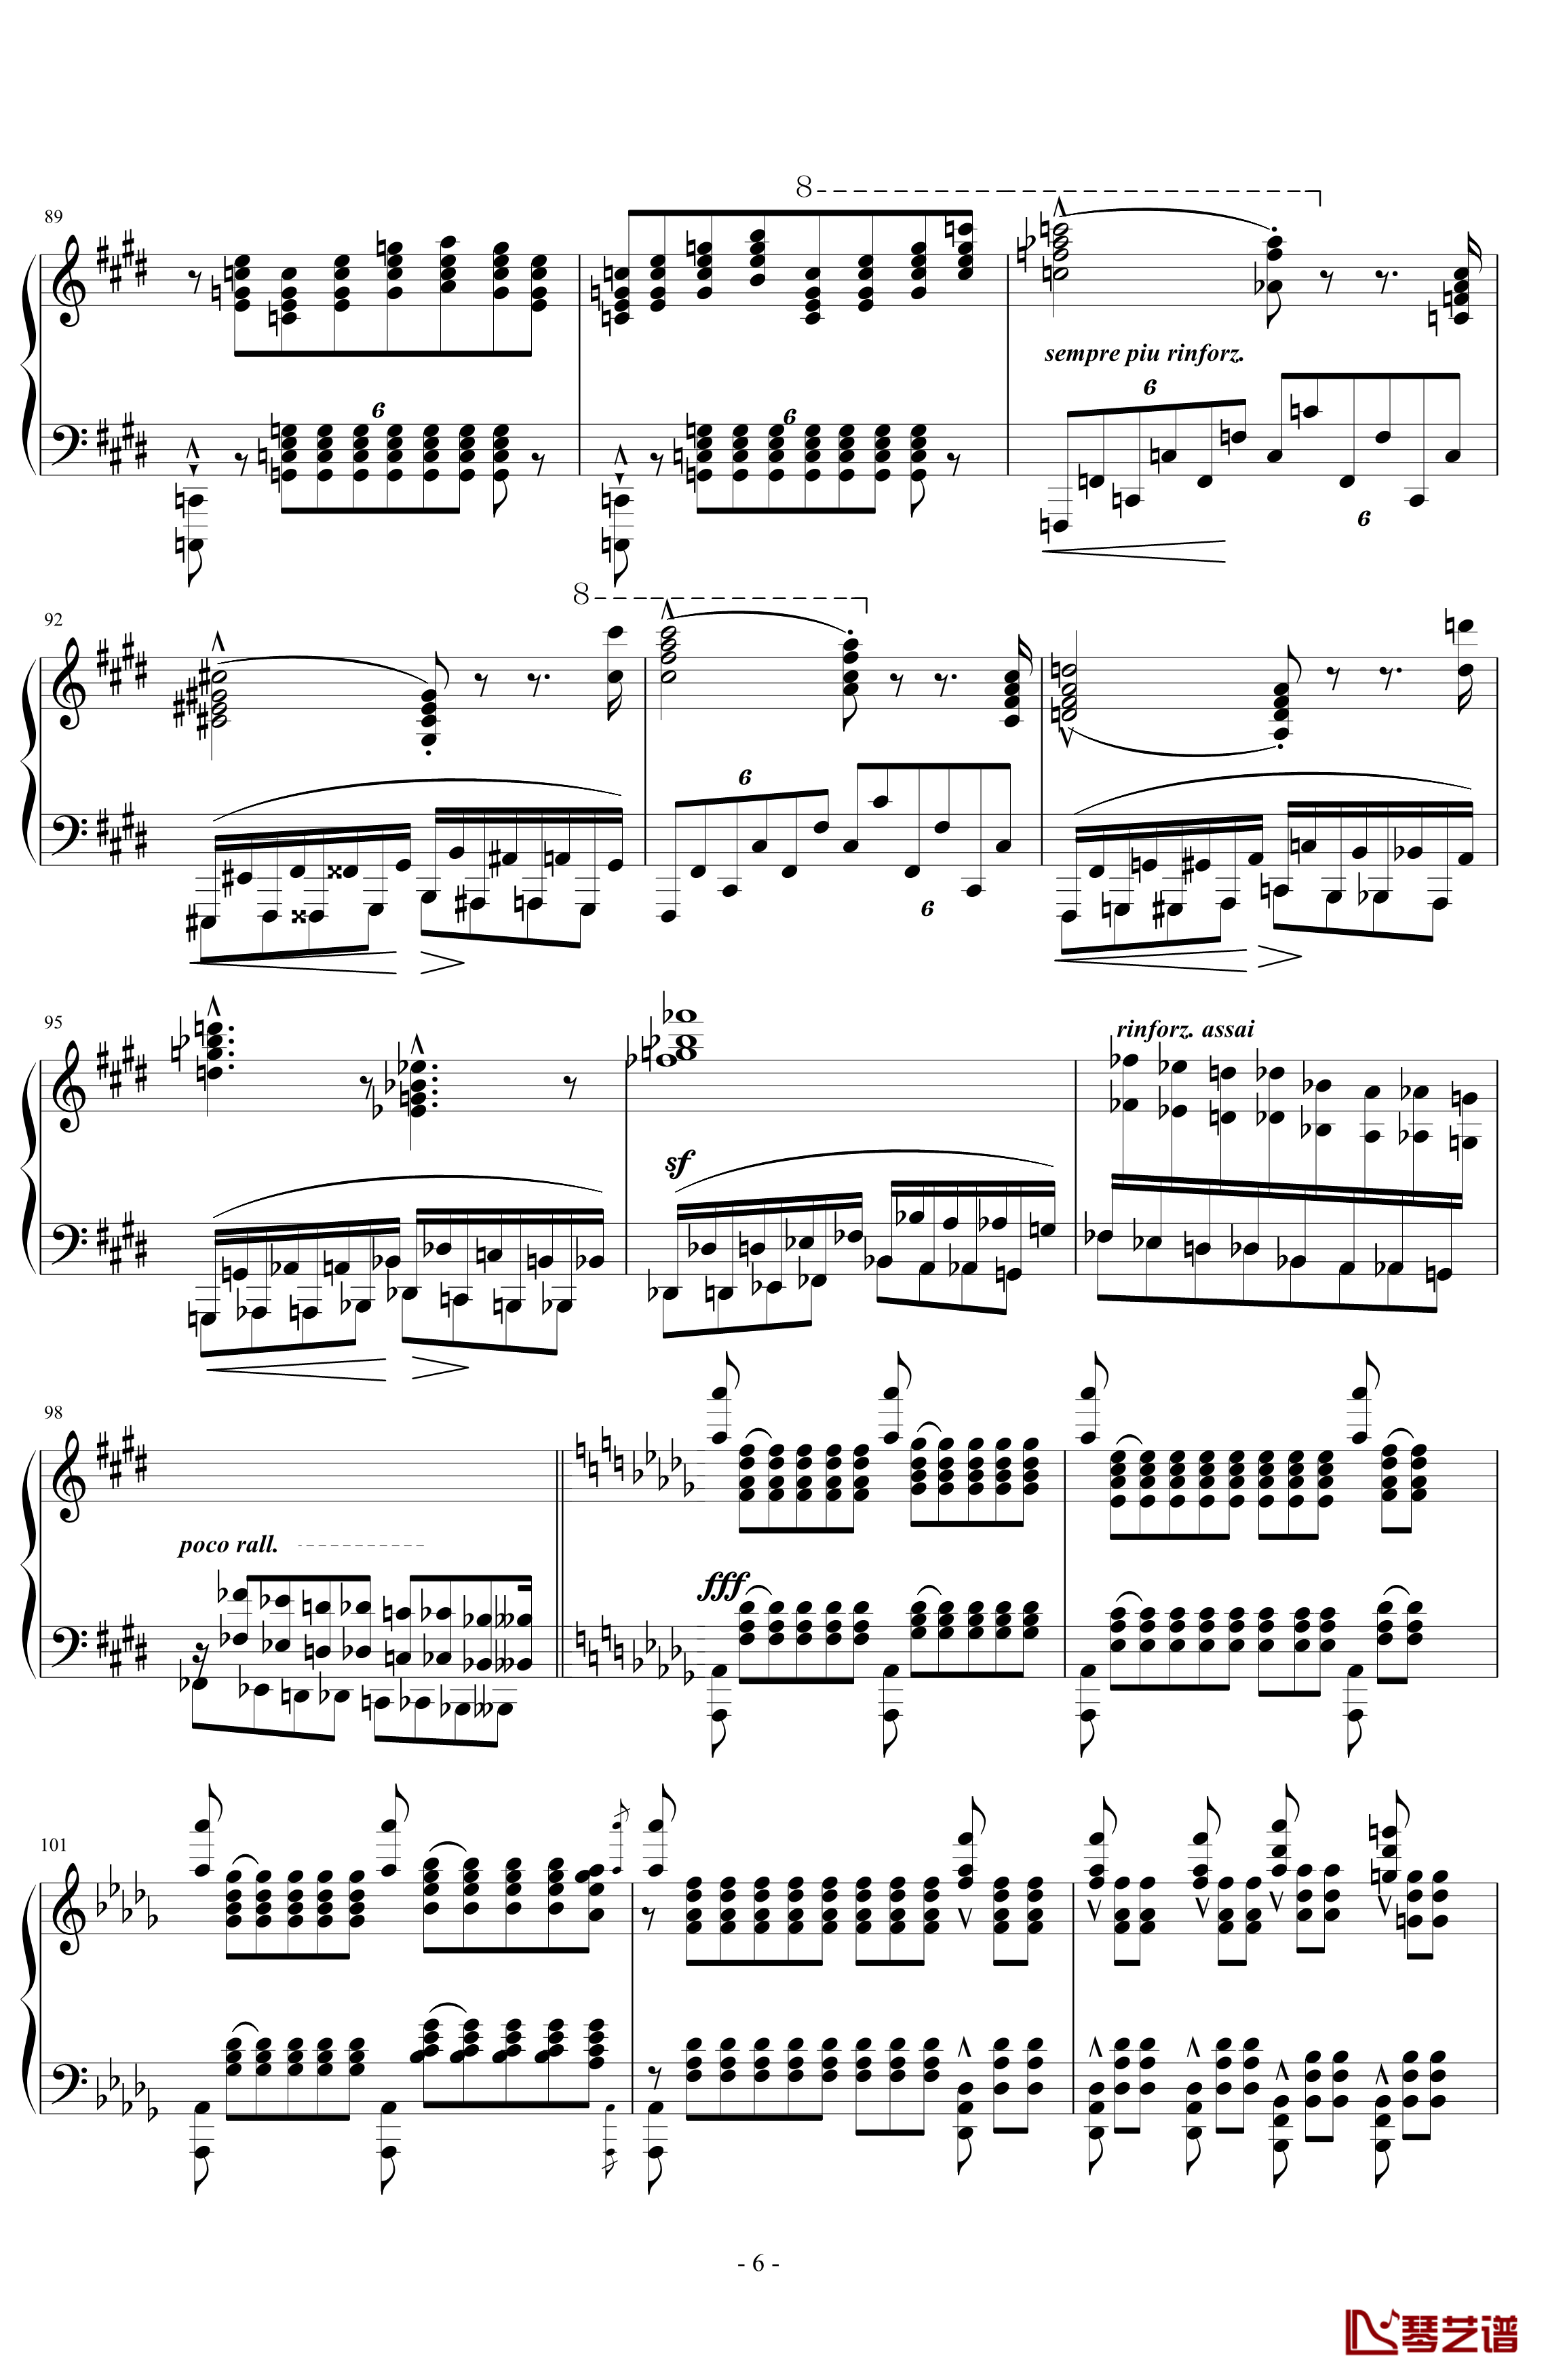 超技练习曲第11号钢琴谱-夜之和谐-李斯特6